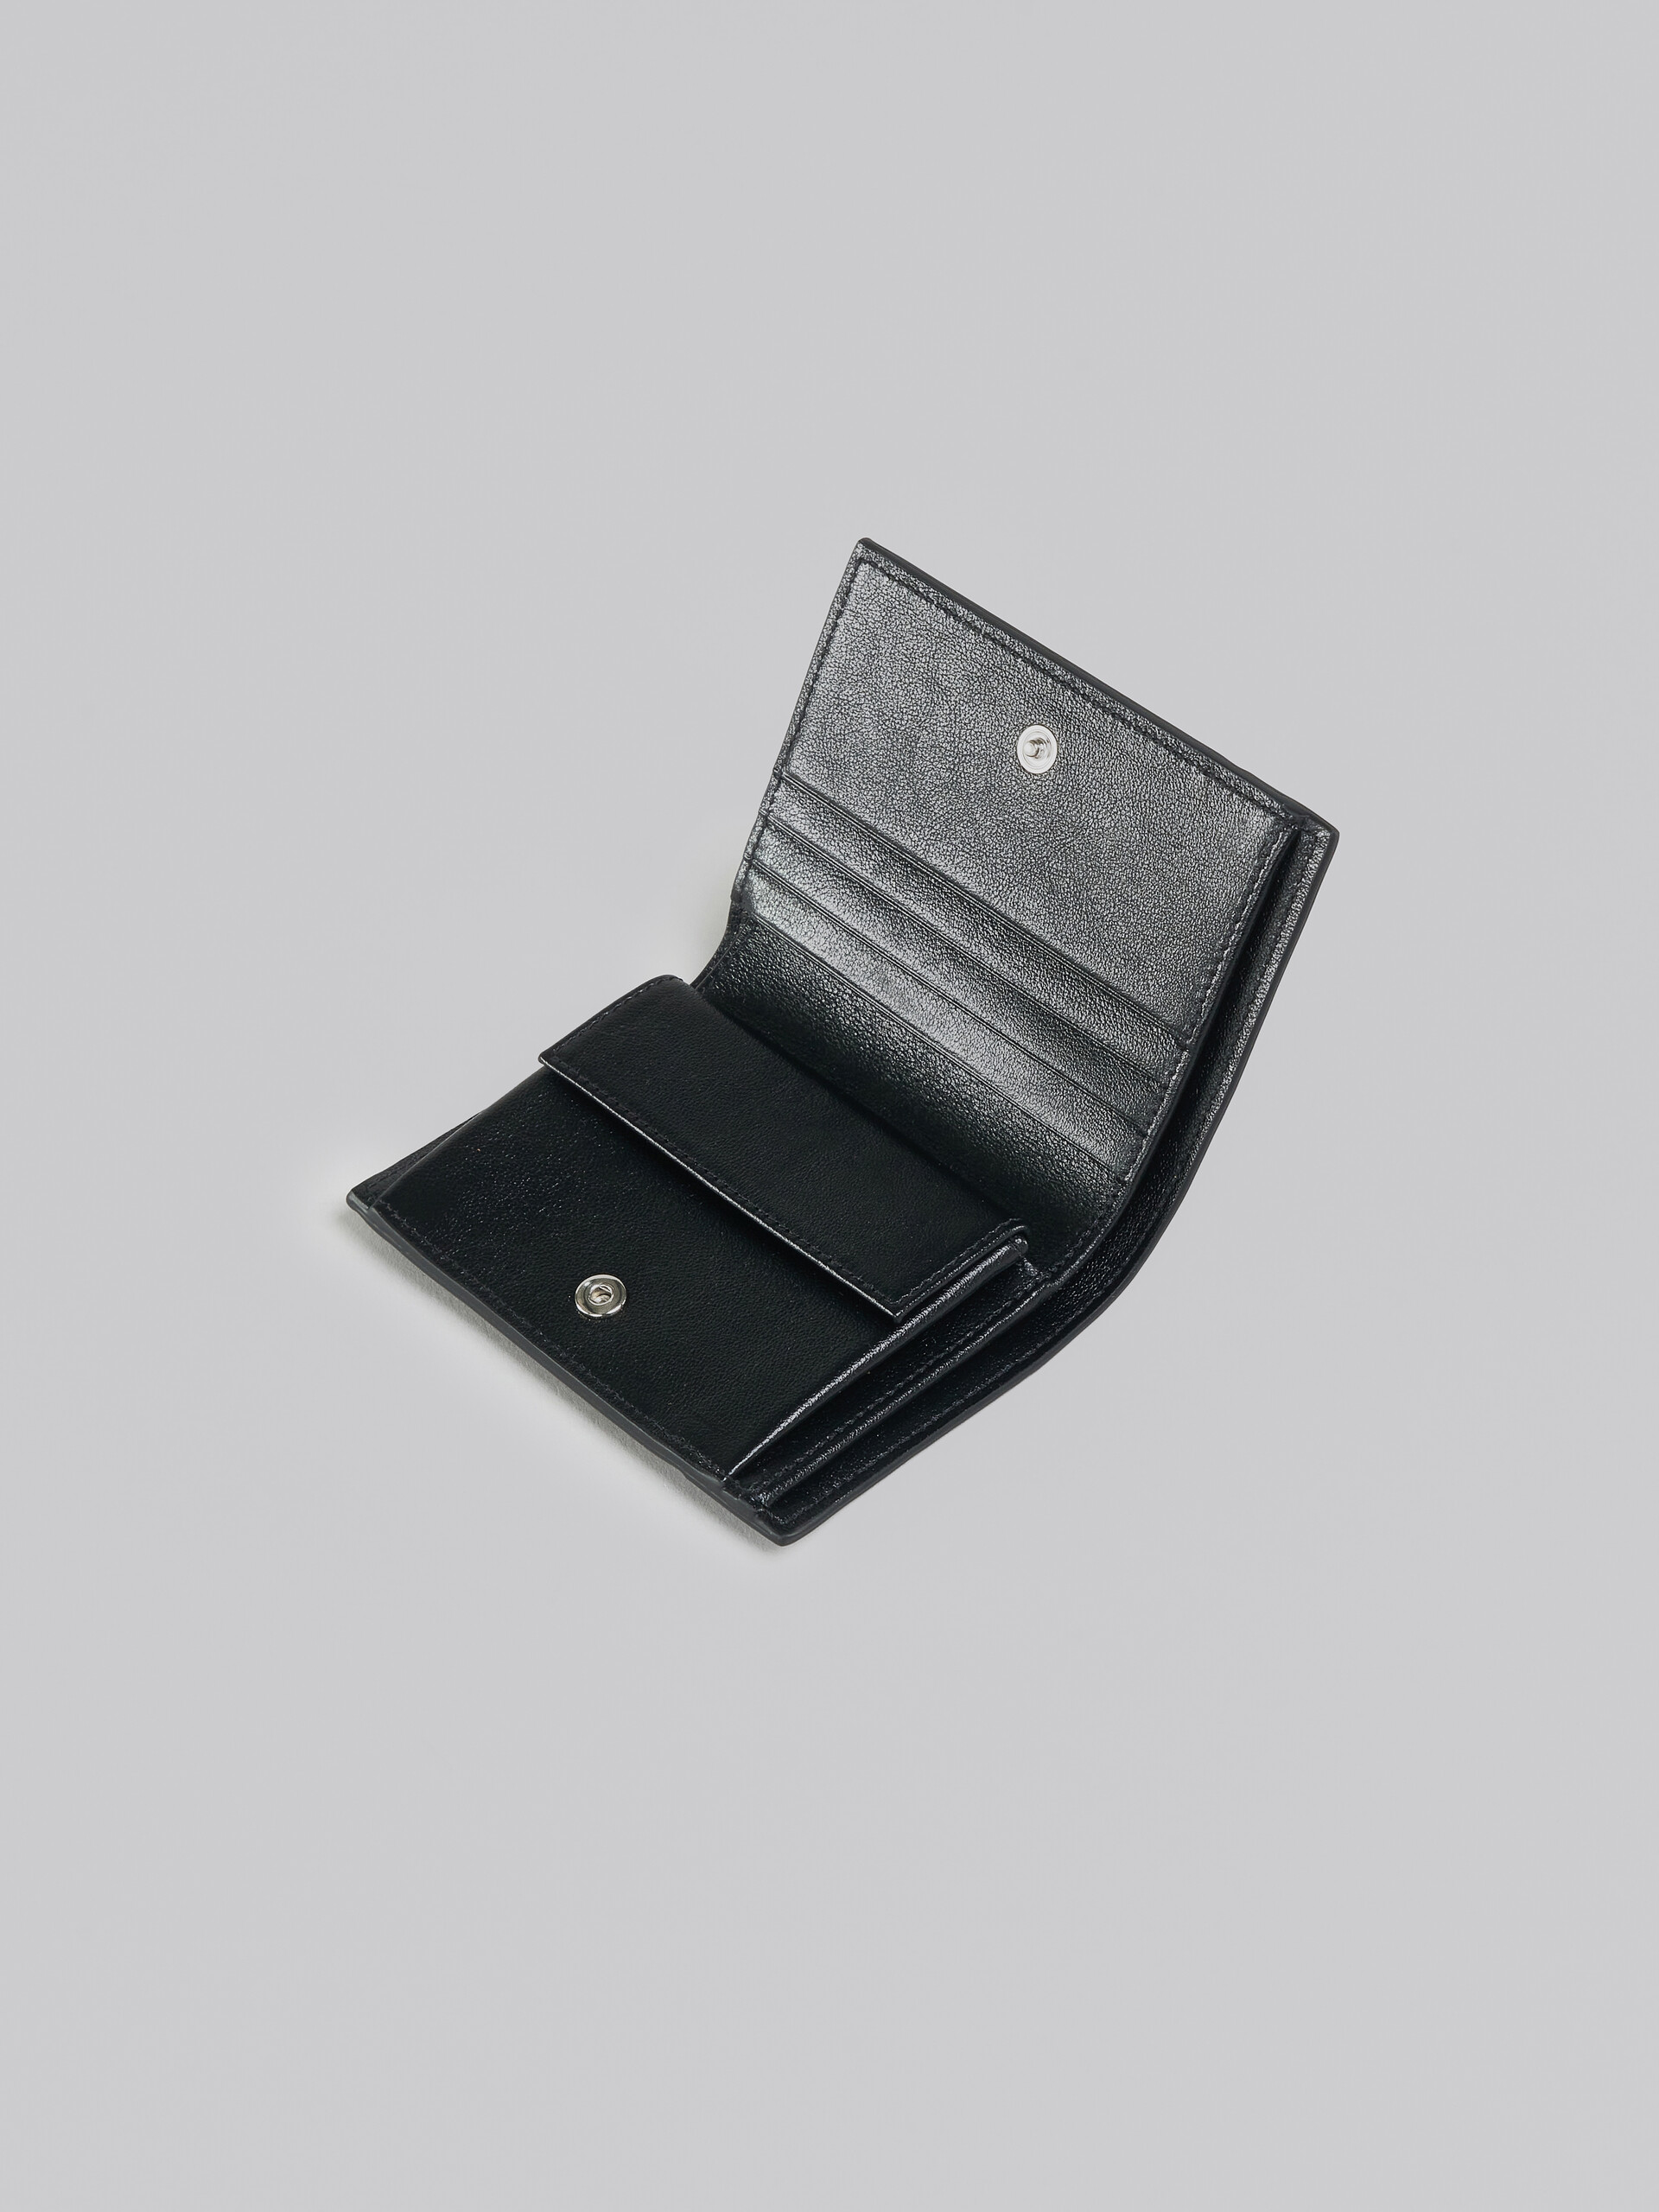 ネイビーブルーとブラック レザー製二つ折りウォレット - 財布 - Image 4